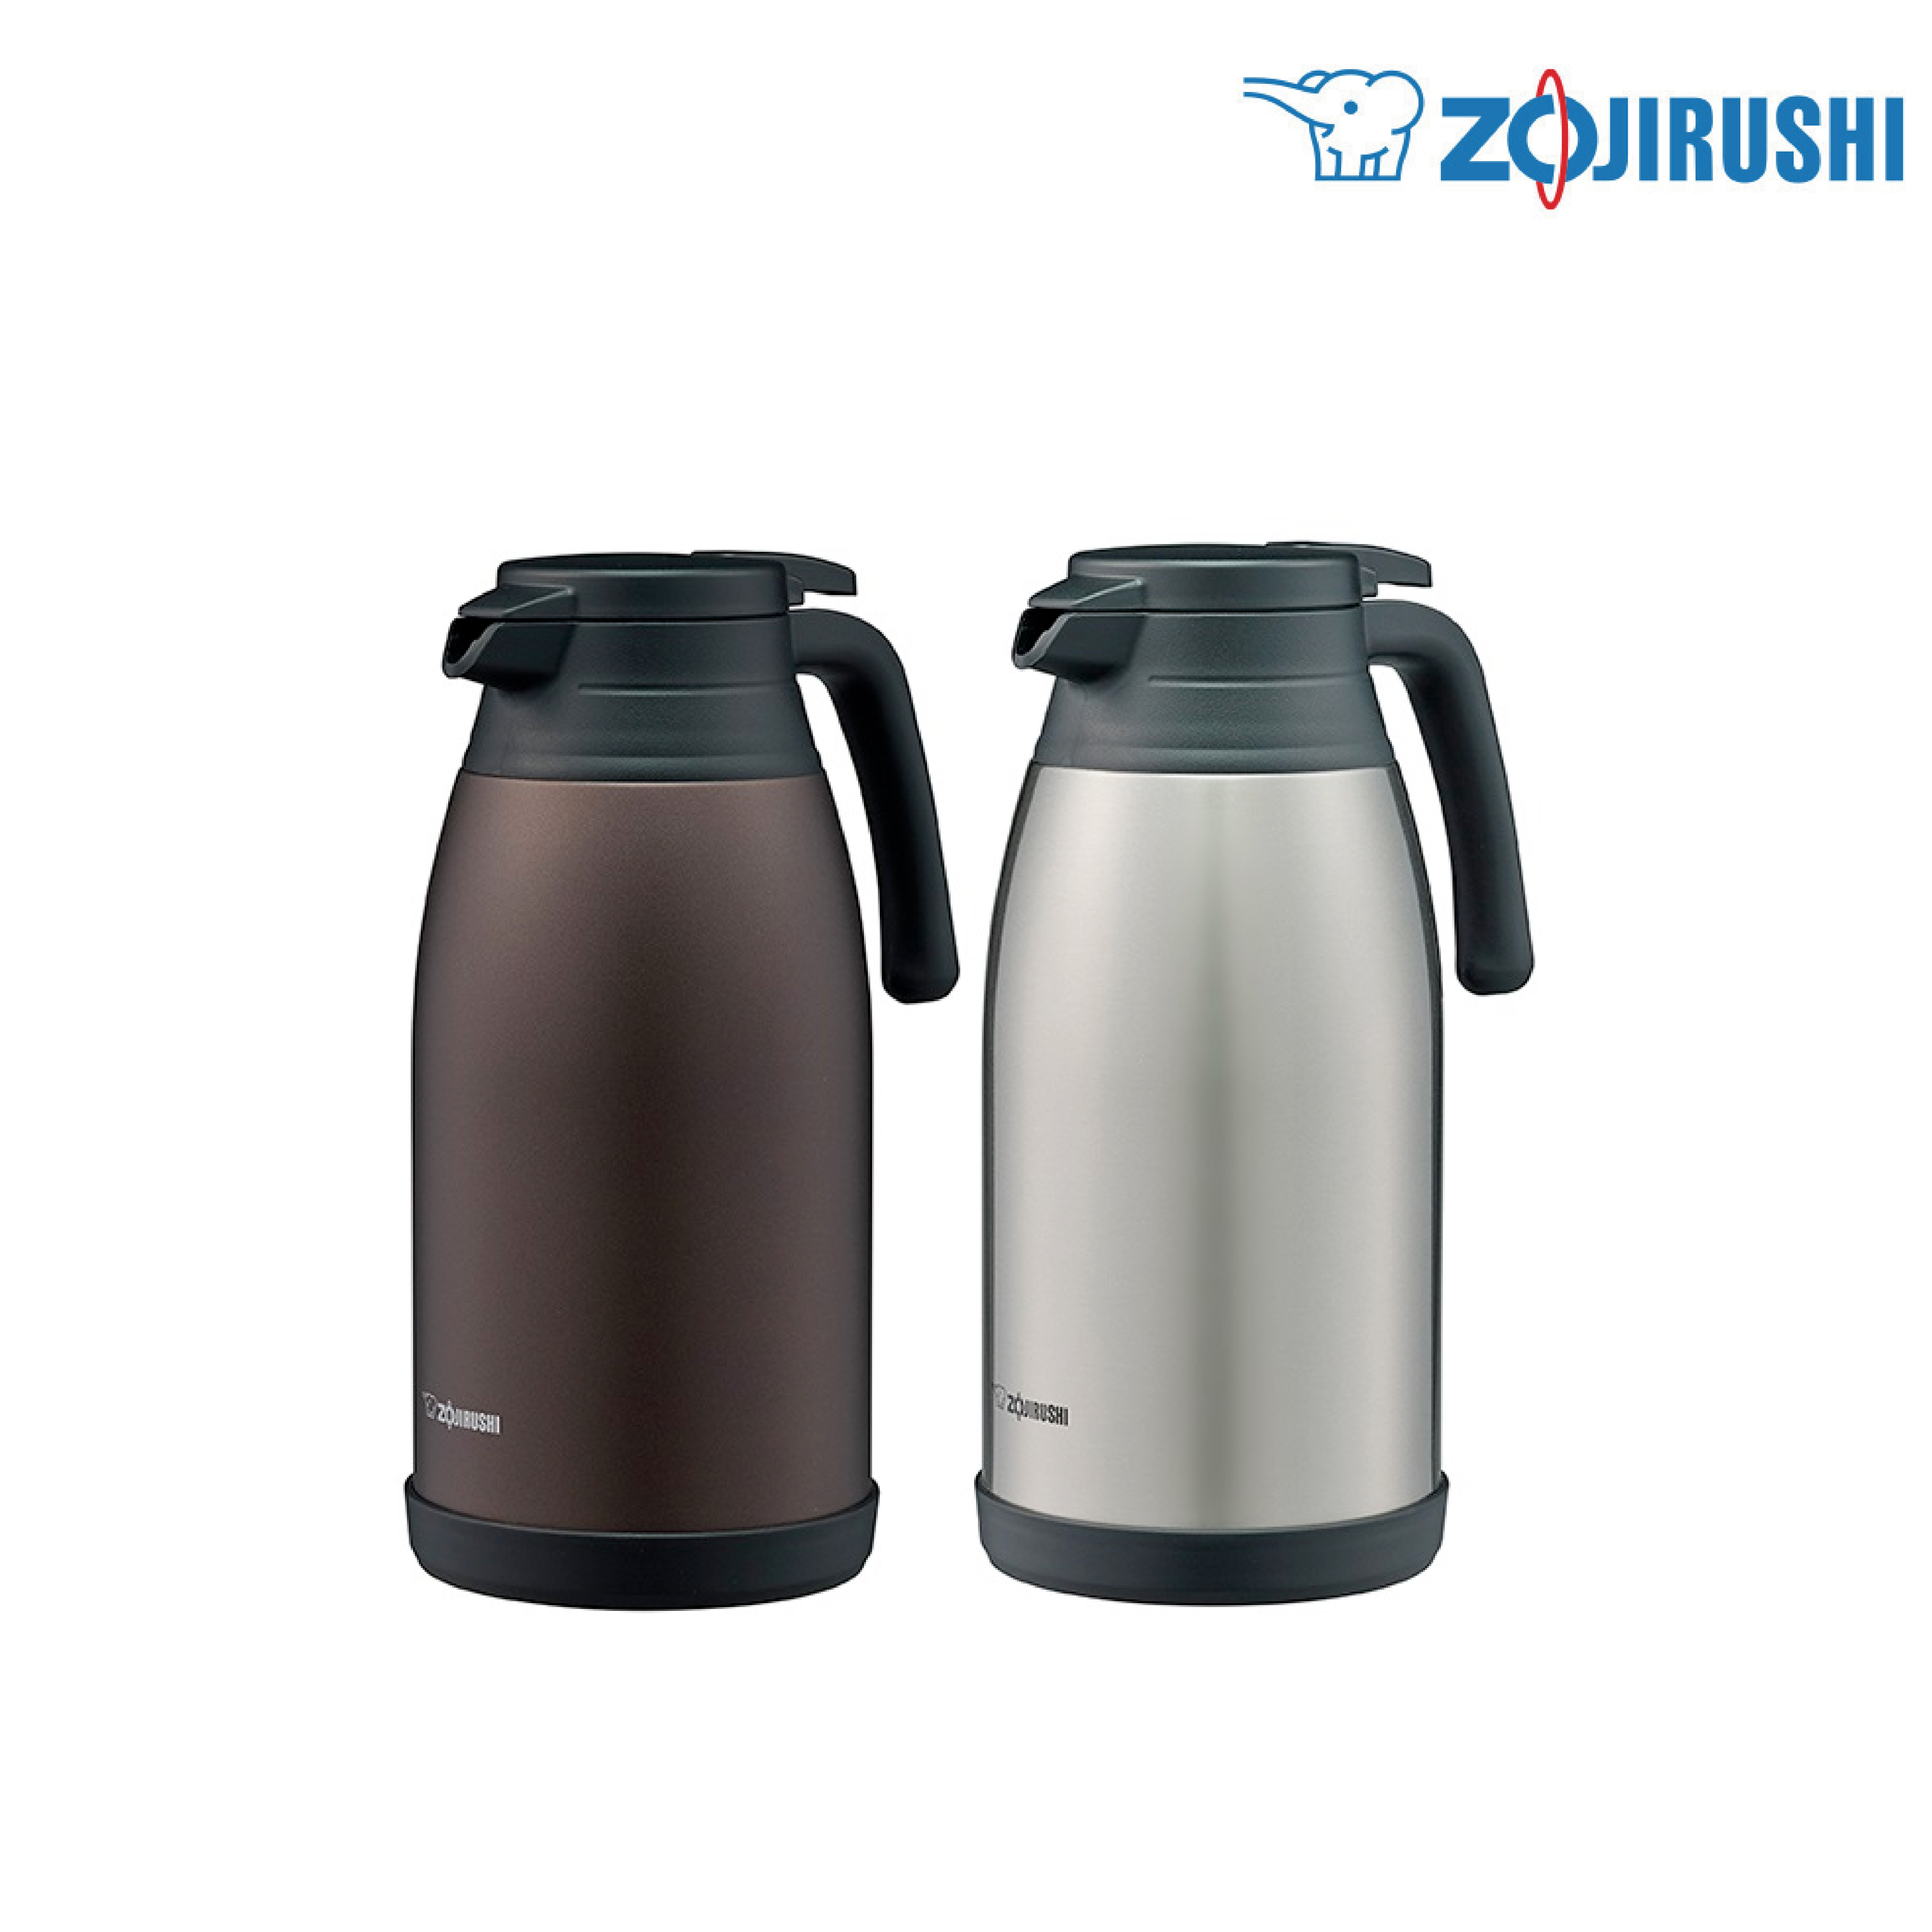 Zojirushi Handy Pot 1.9 Liter Steel Thermal Carafe